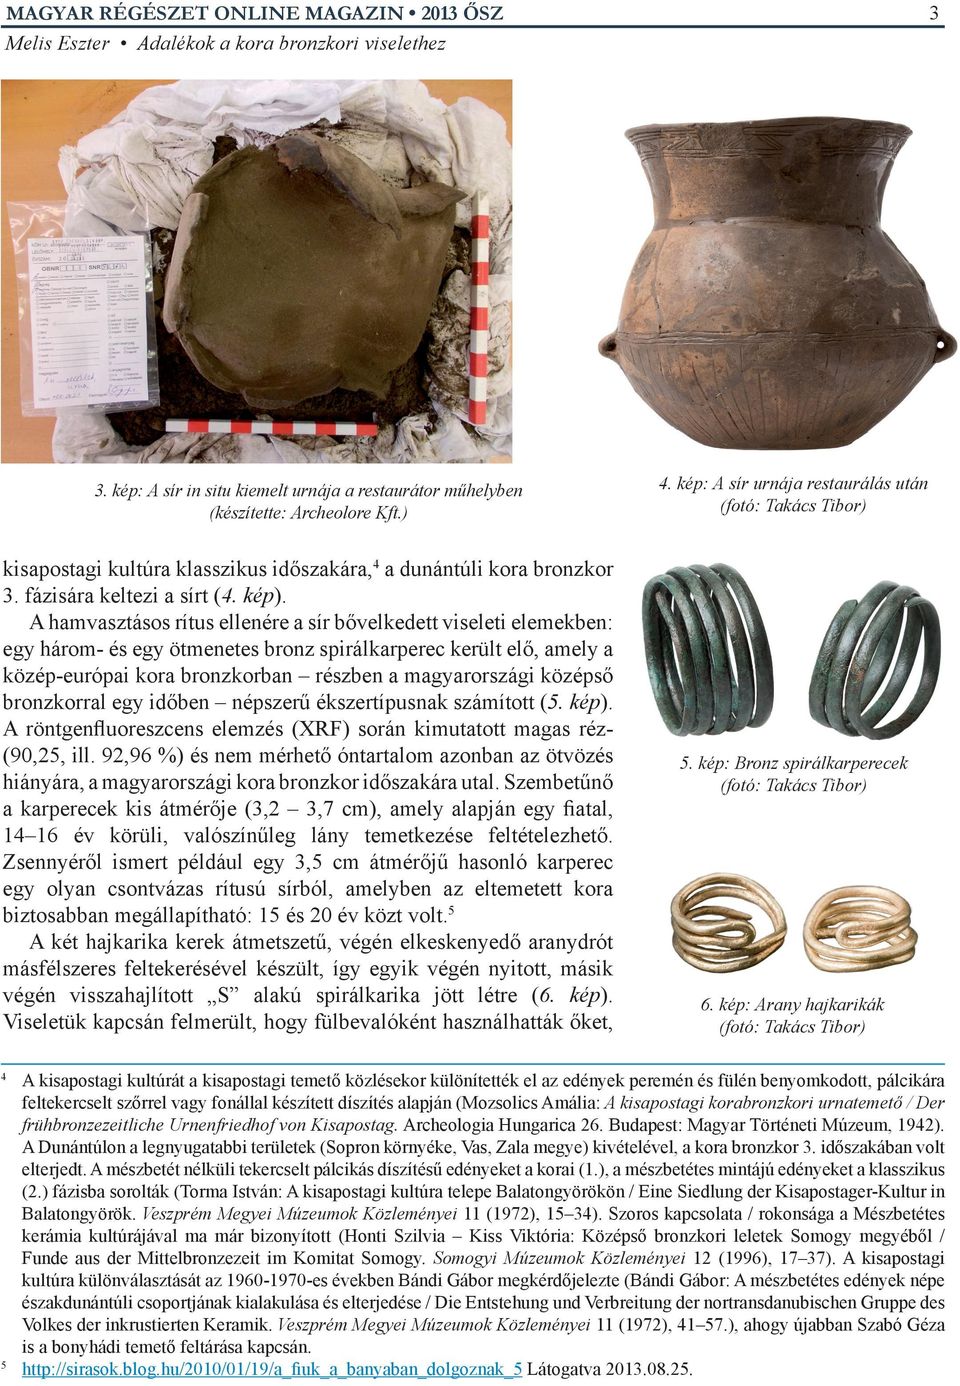 A hamvasztásos rítus ellenére a sír bővelkedett viseleti elemekben: egy három- és egy ötmenetes bronz spirálkarperec került elő, amely a közép-európai kora bronzkorban részben a magyarországi középső